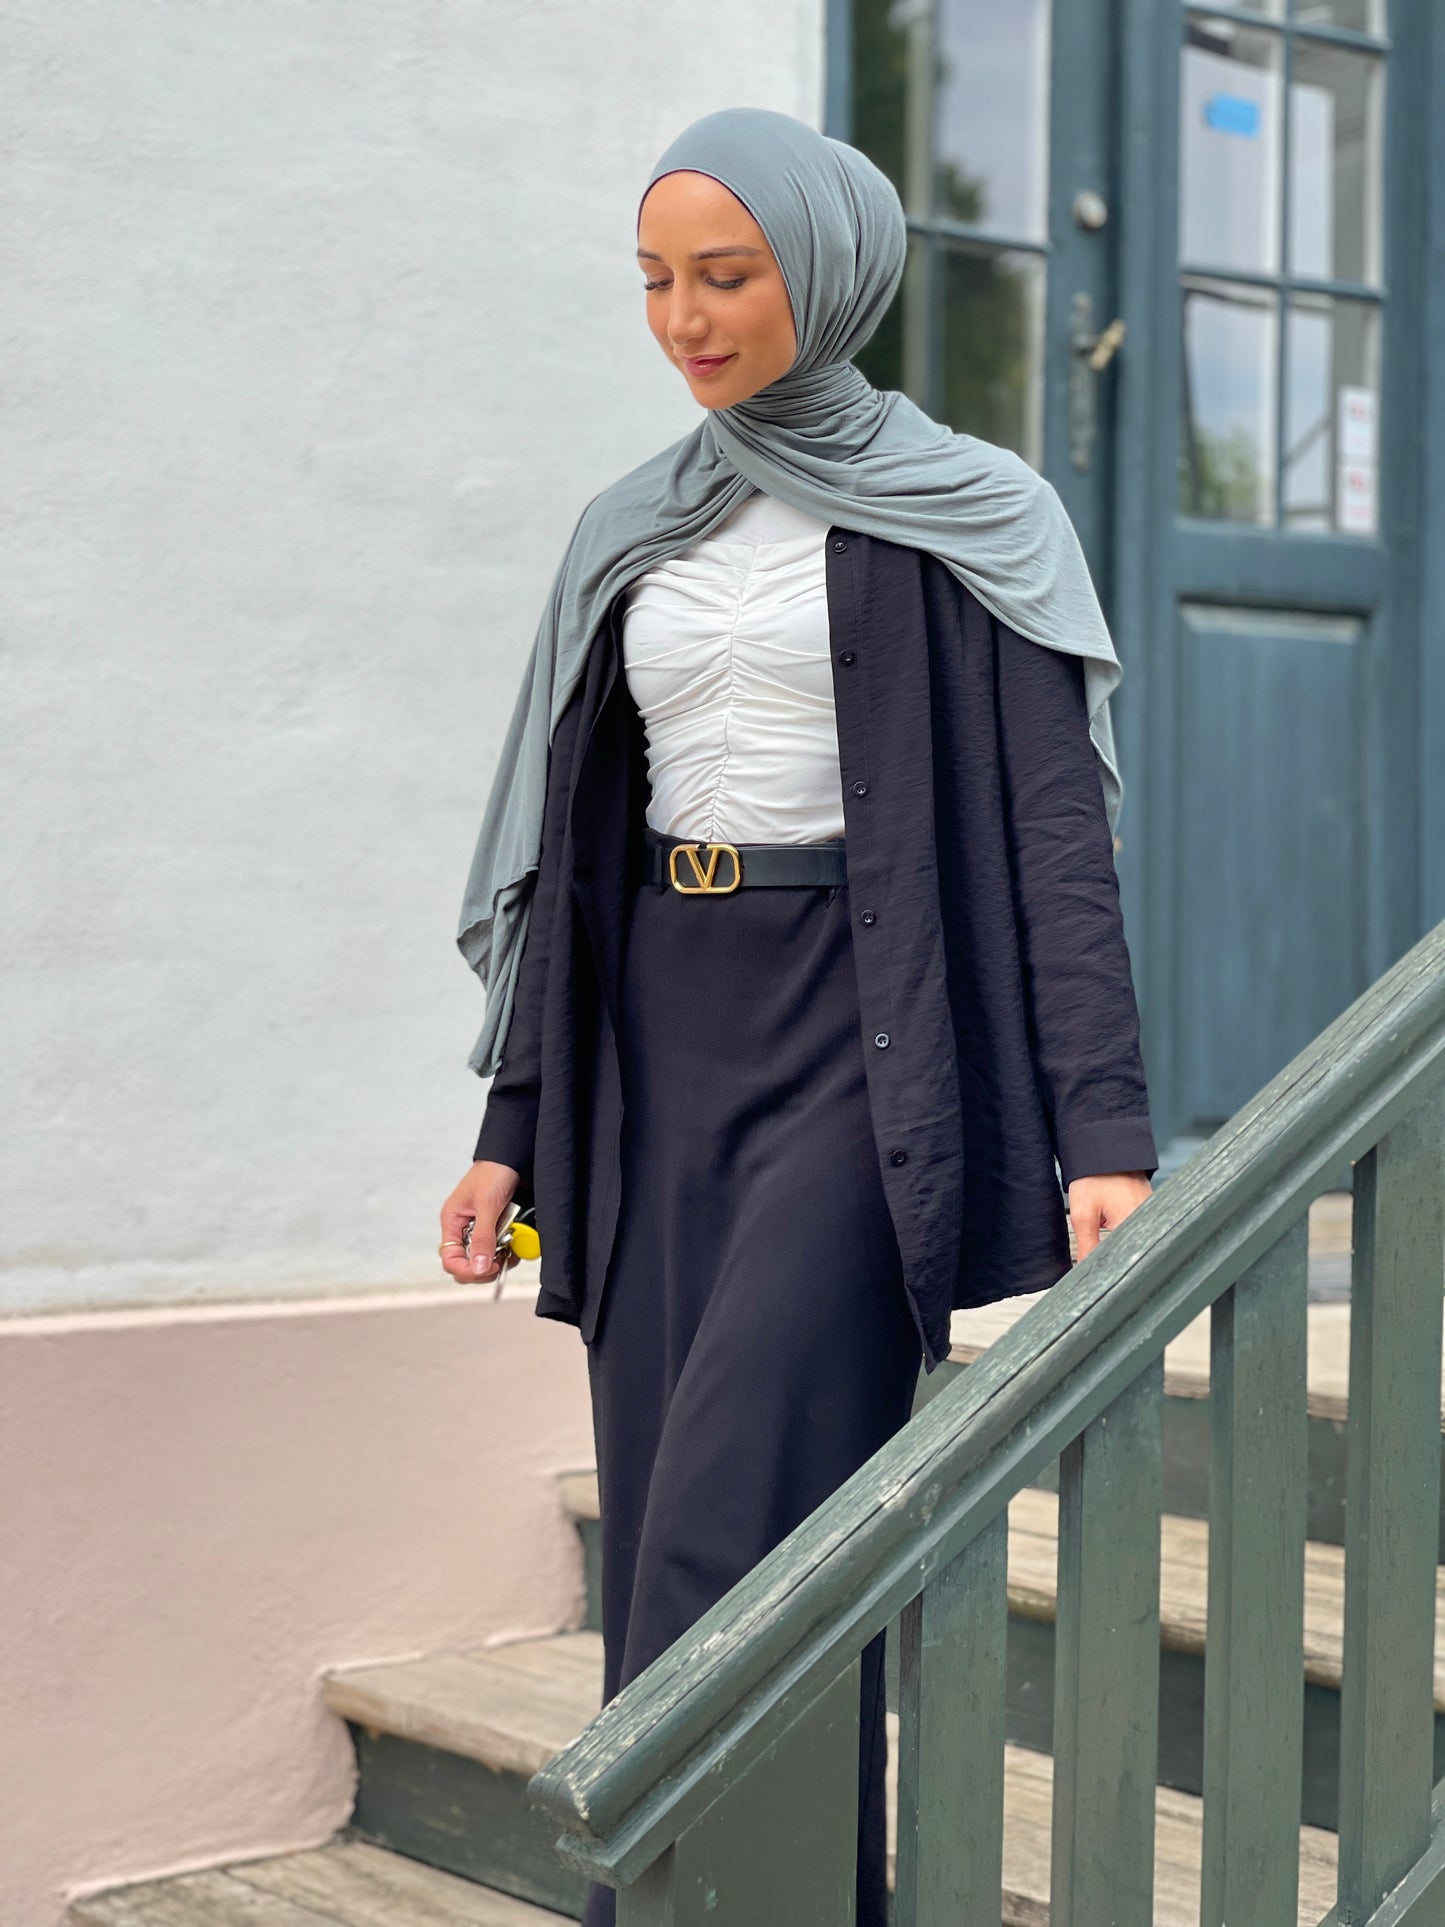 Plain Jersey hijab - Dusty Green b91